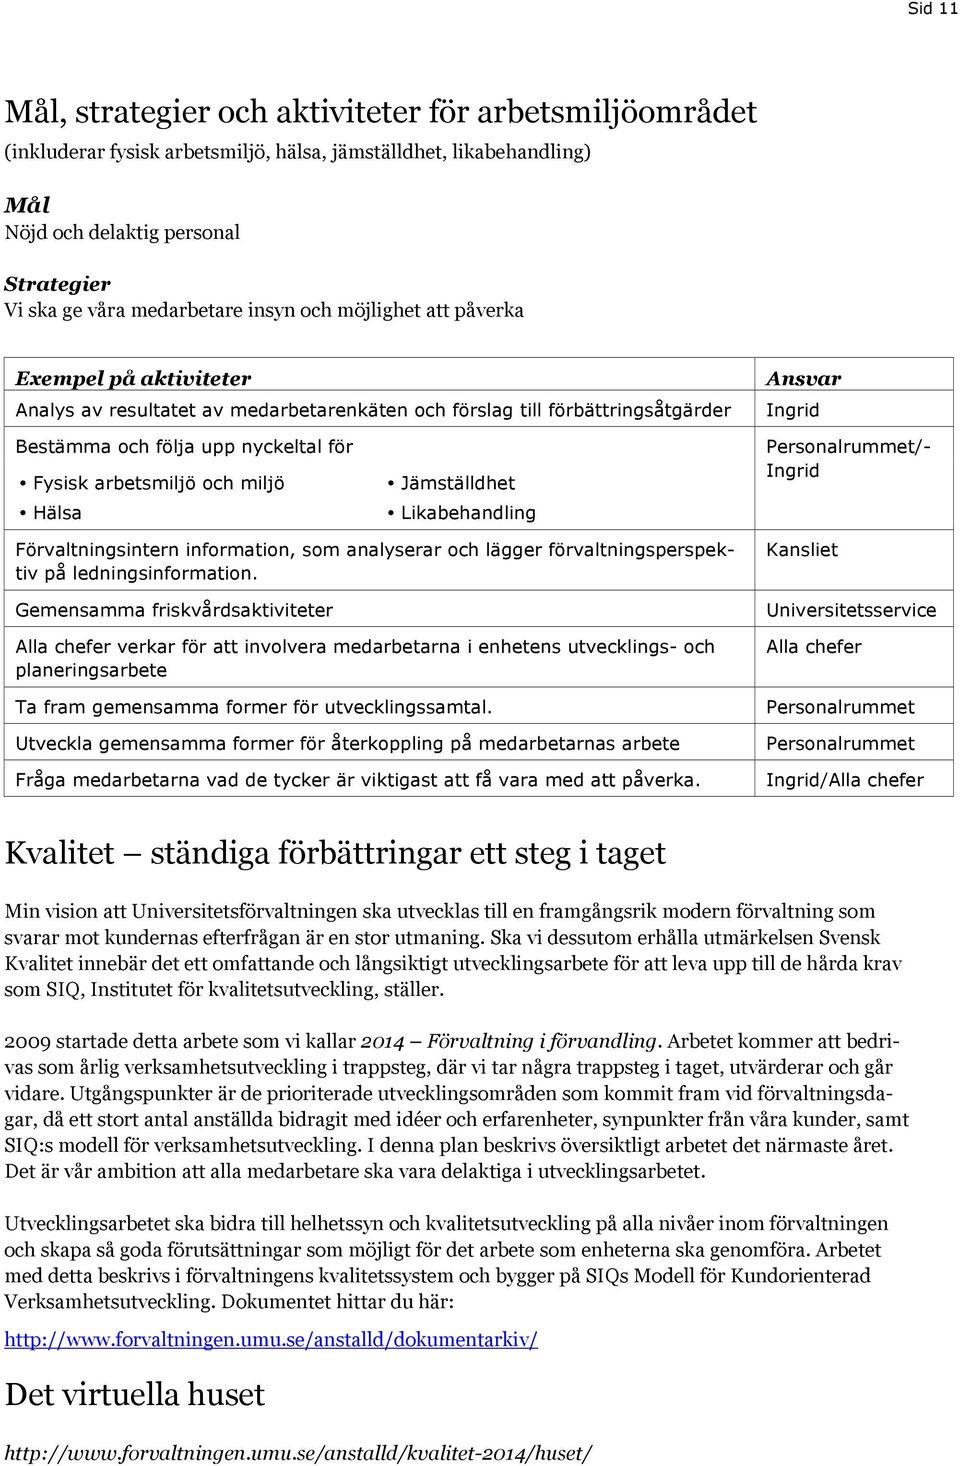 arbetsmiljö och miljö Hälsa Jämställdhet Likabehandling Personalrummet/- Ingrid Förvaltningsintern information, som analyserar och lägger förvaltningsperspektiv på ledningsinformation.